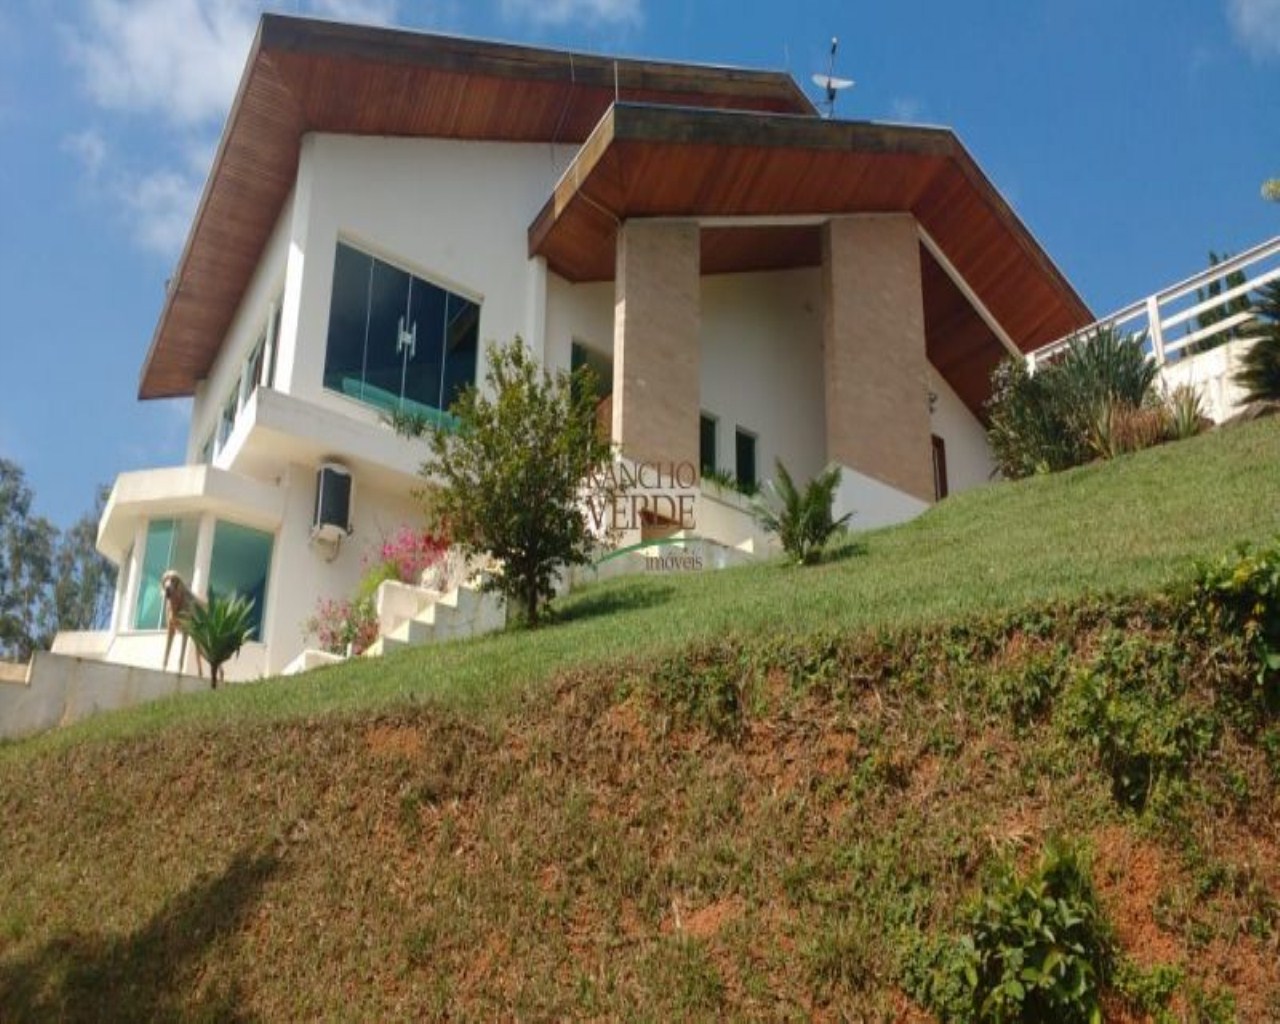 Chácara de 5.490 m² em Jacareí, SP